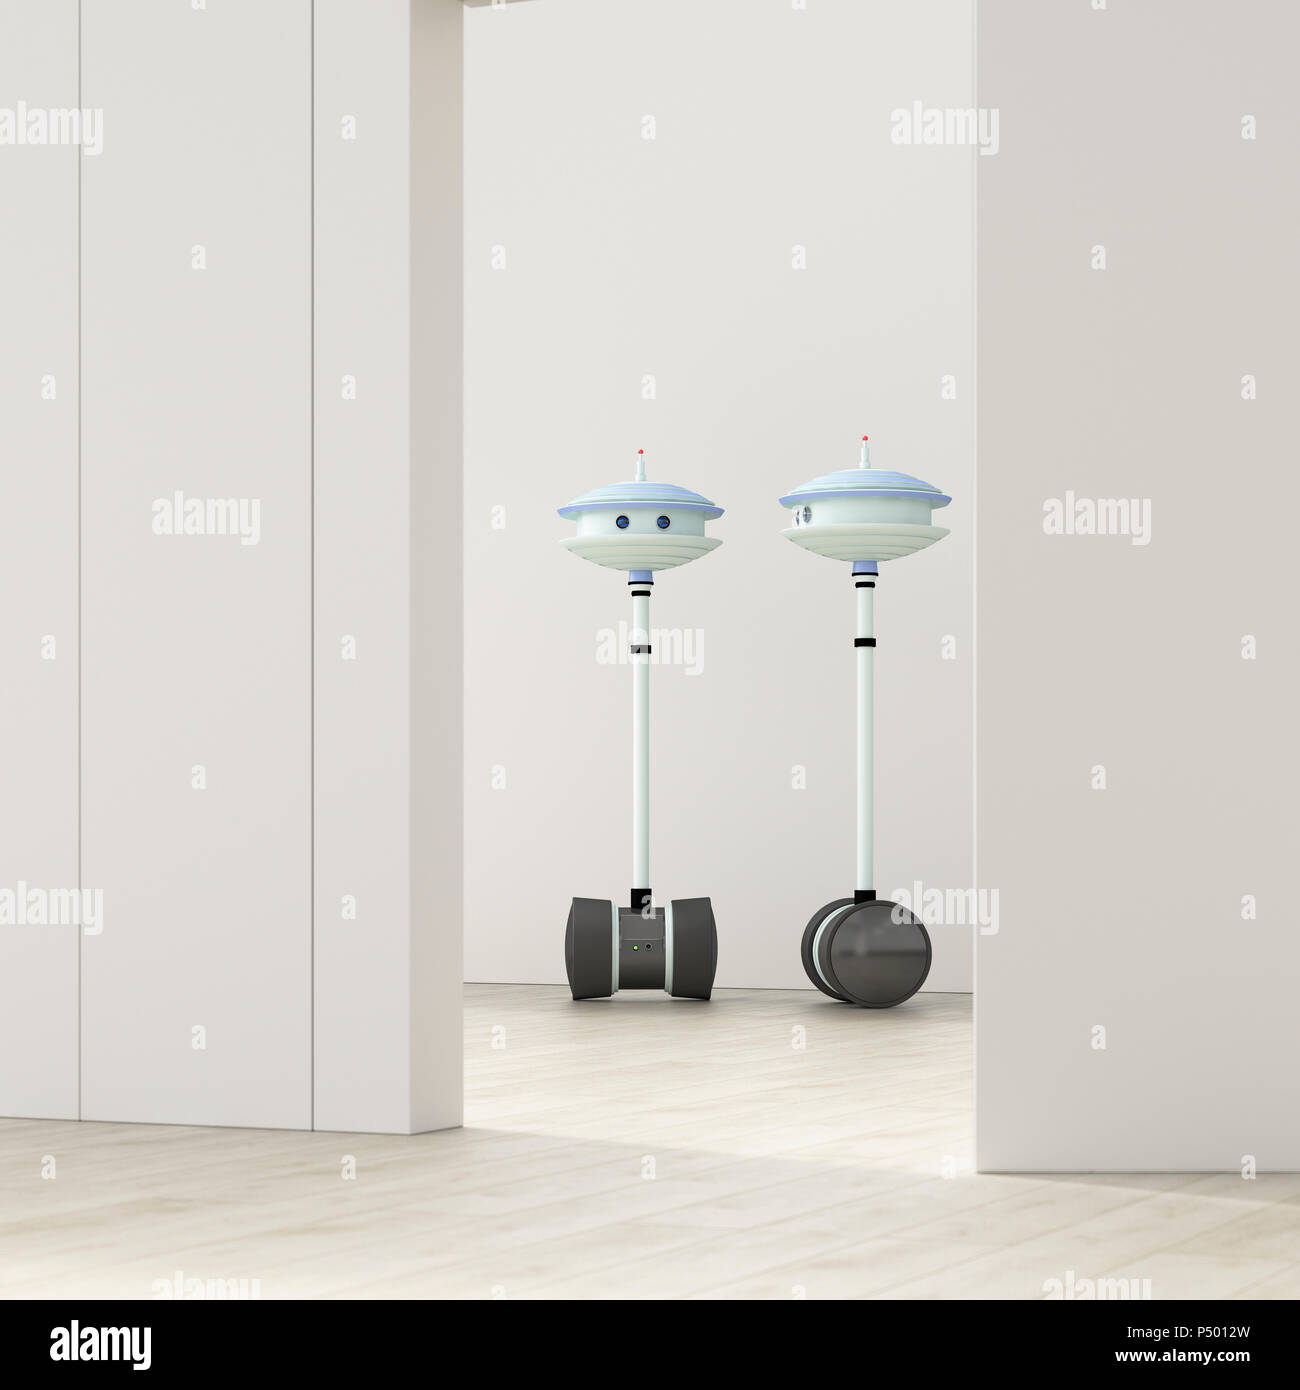 Deux robots derrière la porte entrouverte dans une salle vide, 3D Rendering Banque D'Images